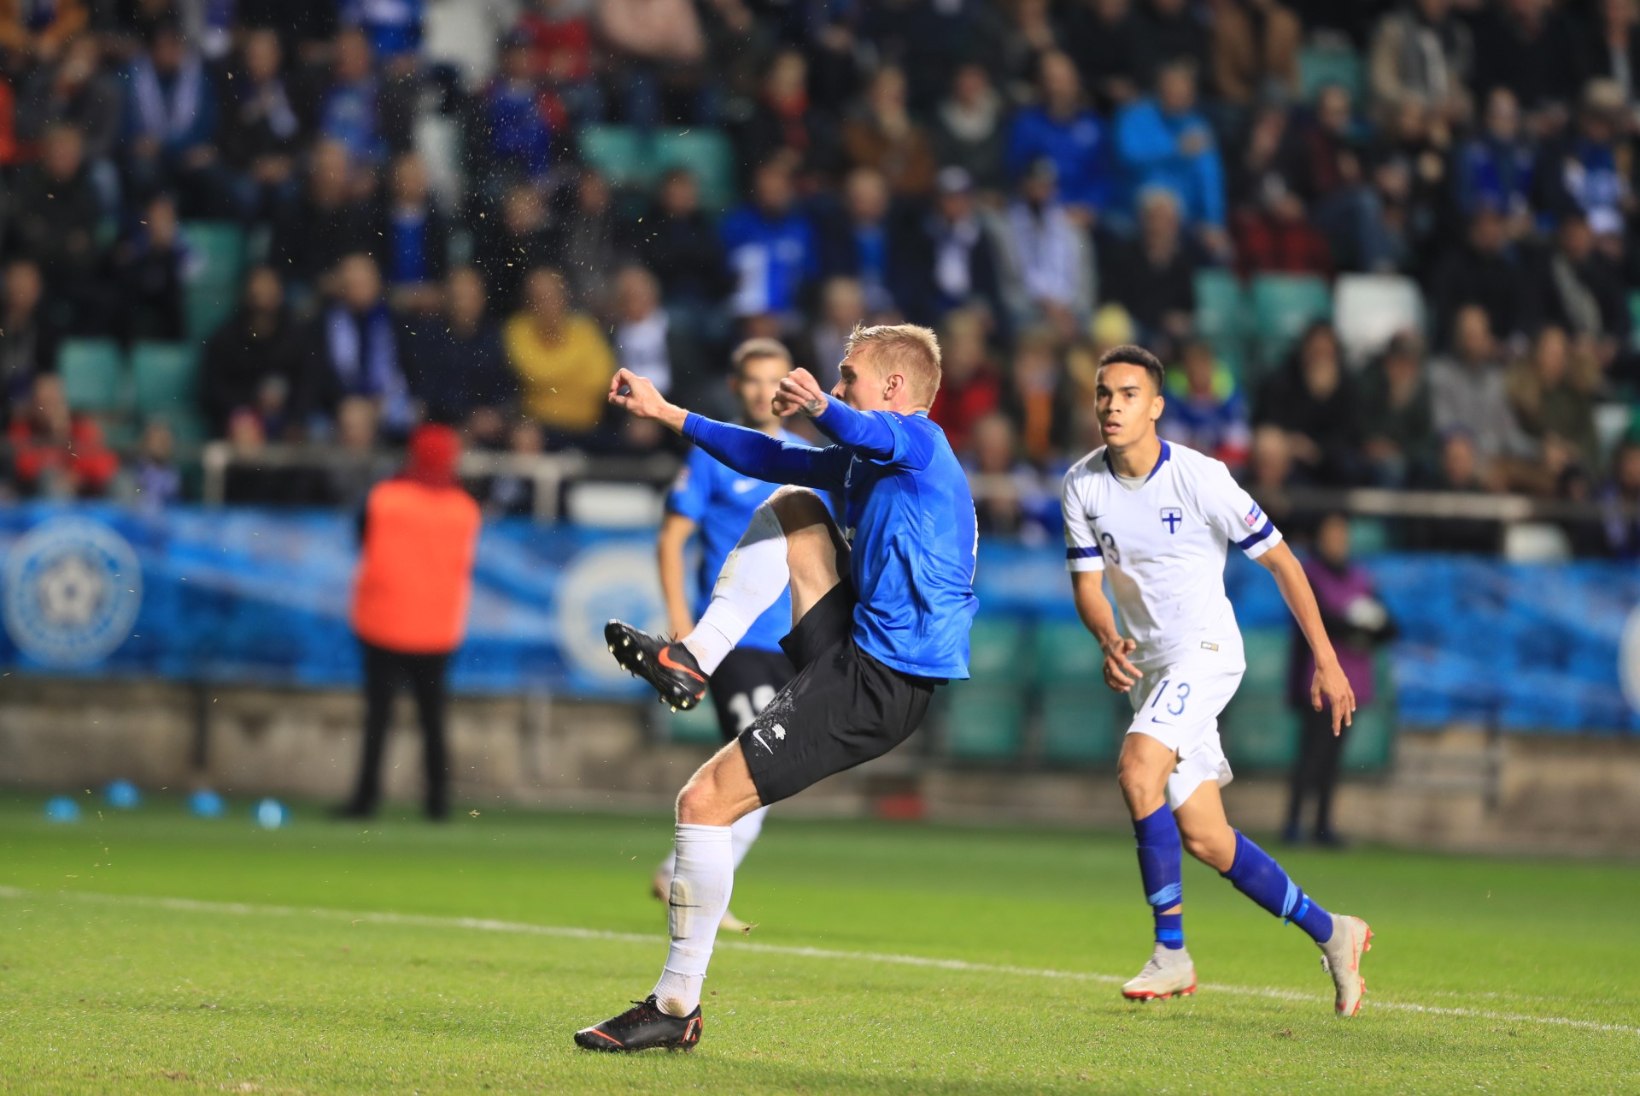 NII SEE JUHTUS | Sport 12.10: KATKINE PLAAT! Eesti kaotas 0:1, Ratasepp jõudis finišisse